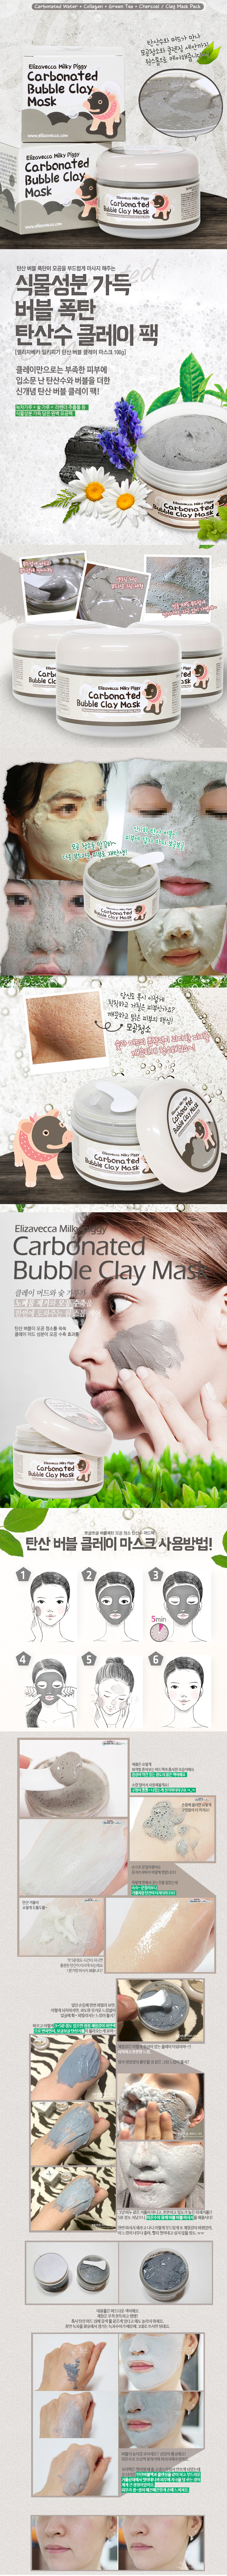 original-elizavecca-milky-piggy-carbonated-bubble-clay-mask-wonderful-result-dec